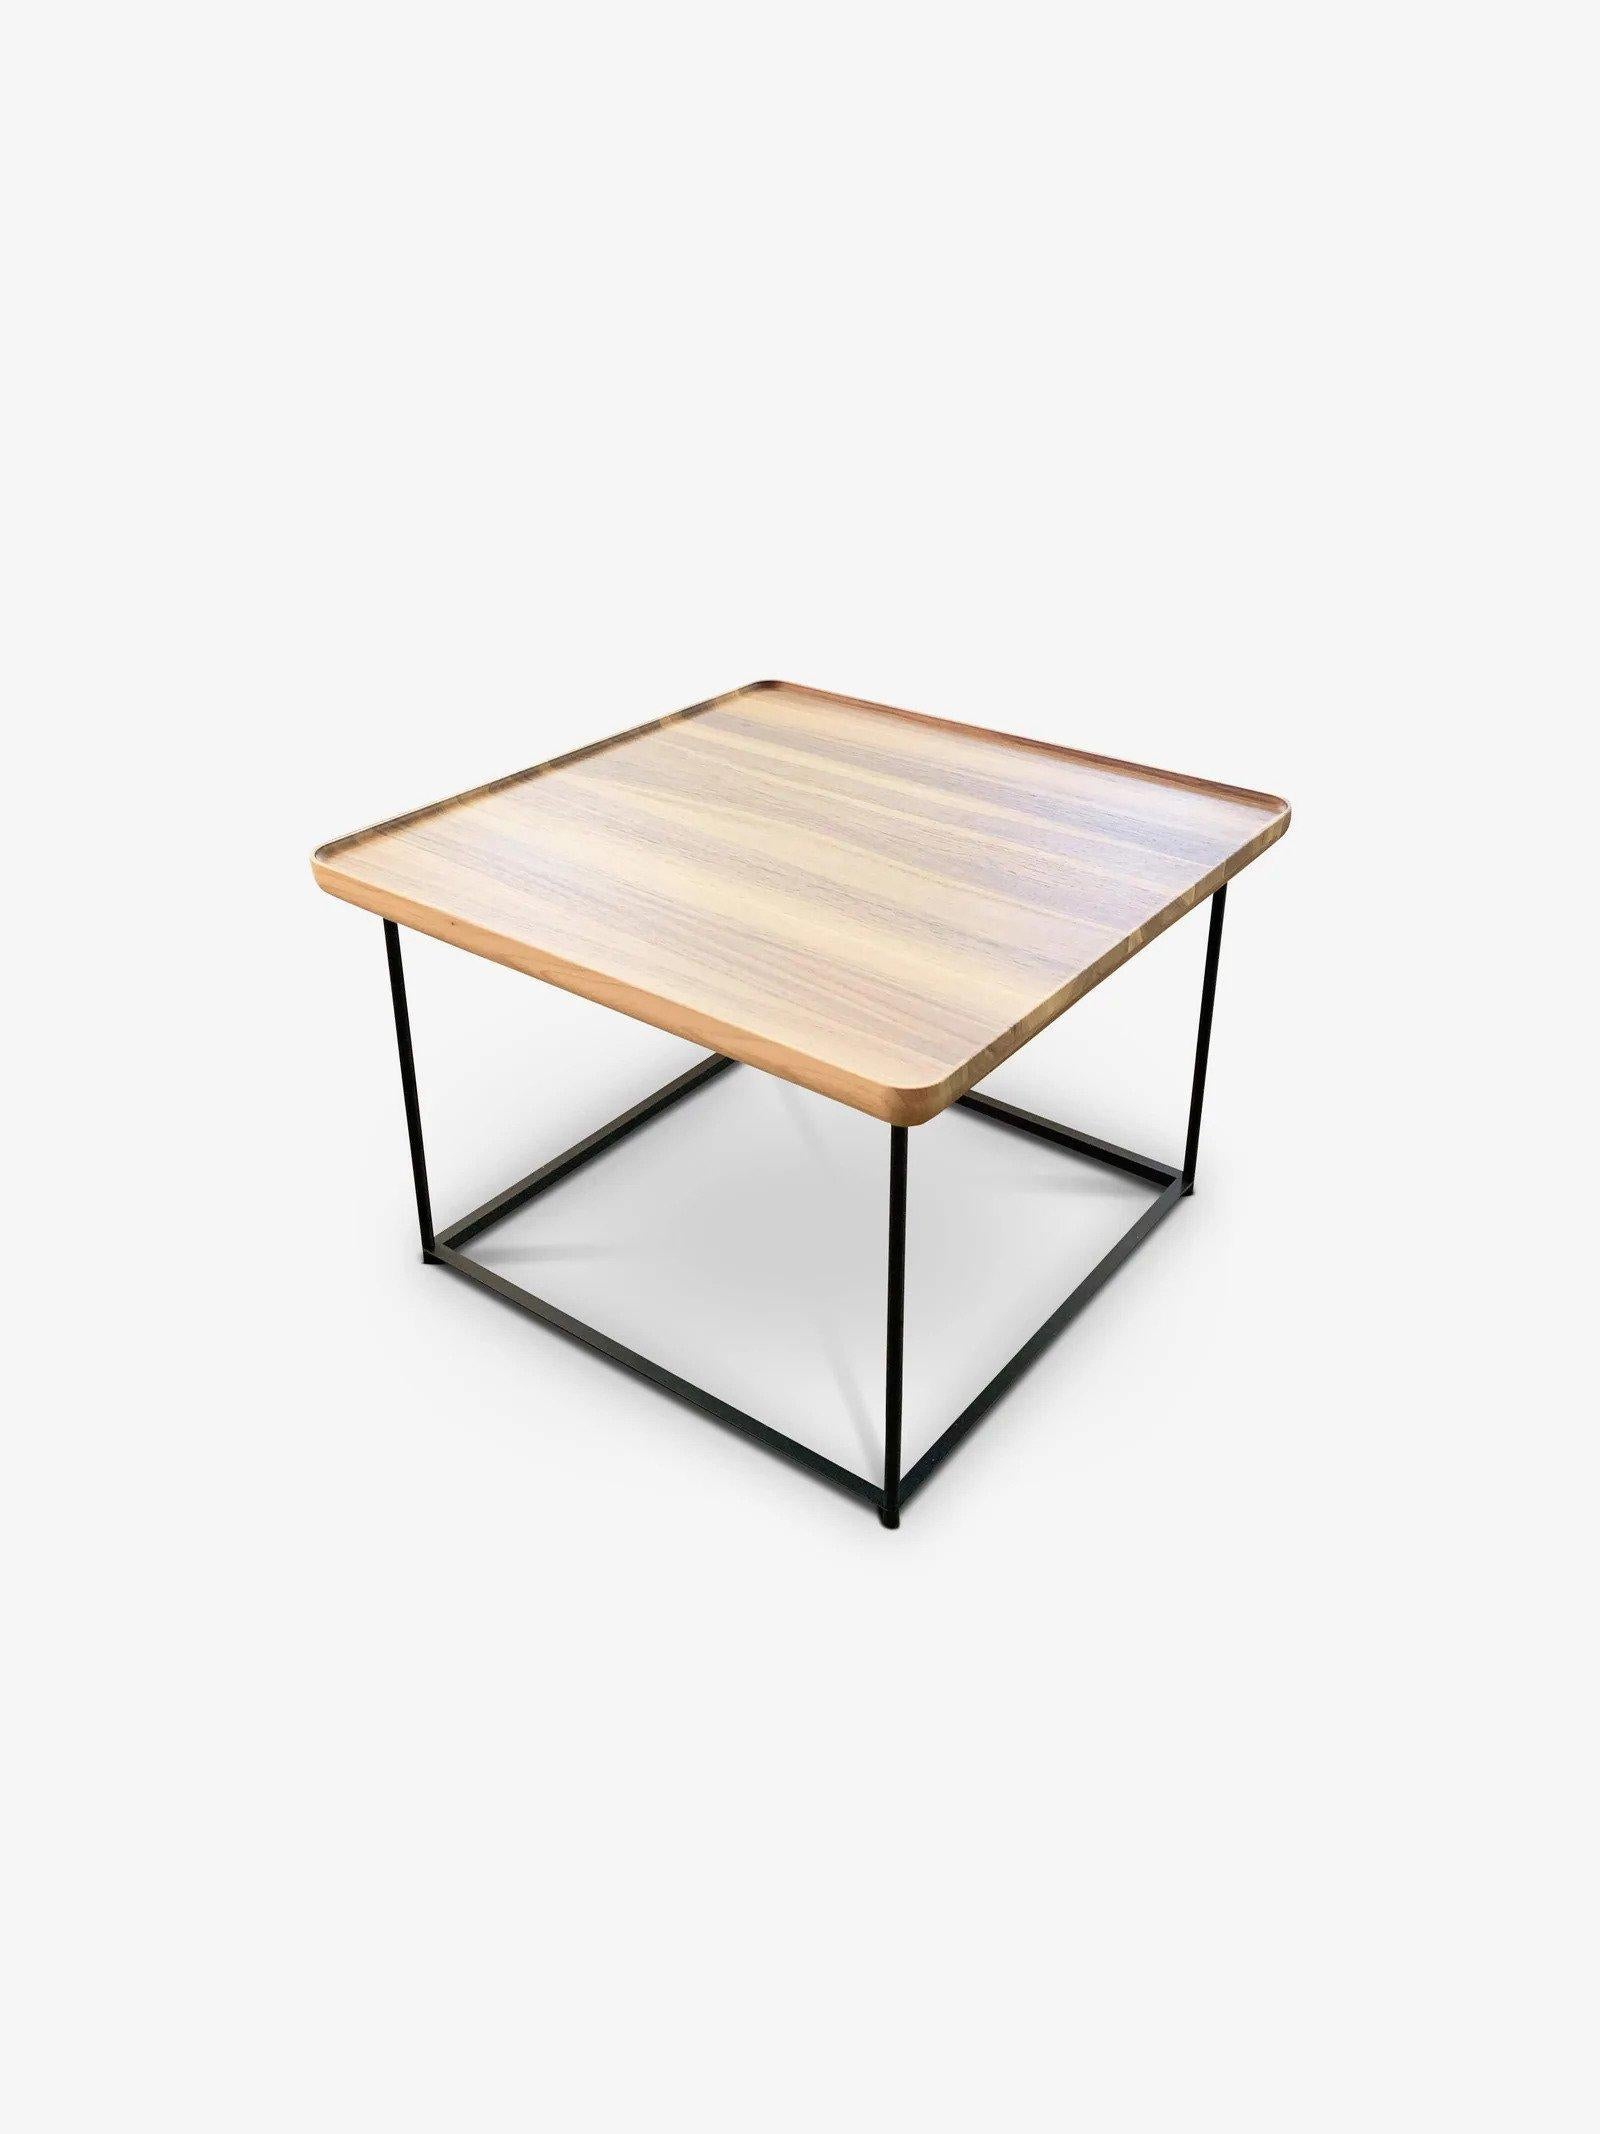 Contemporary Luca Nichetto 381 Torei Square Table in Walnut For Sale